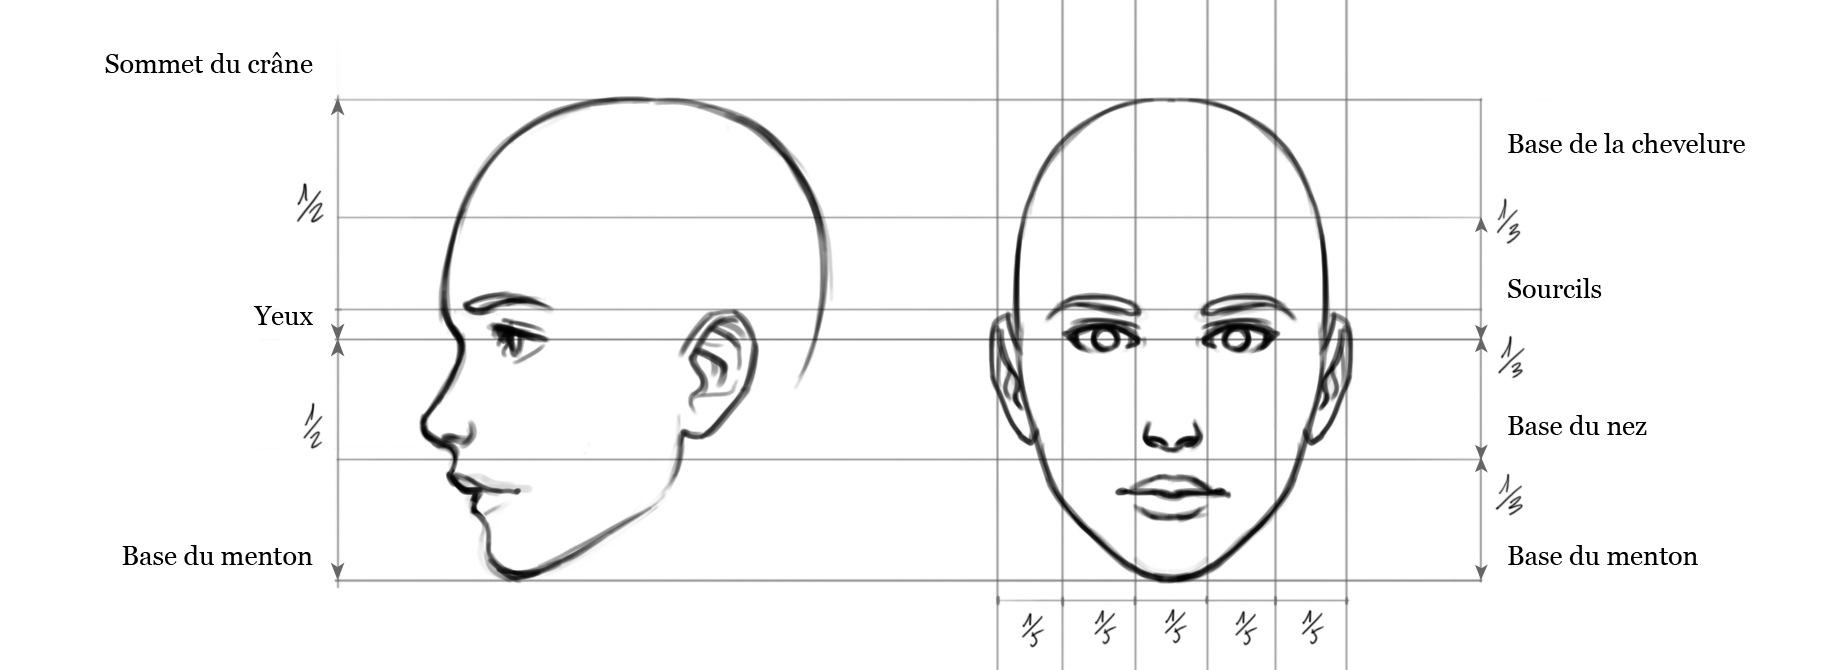 Пропорции головы человека анфас и профиль